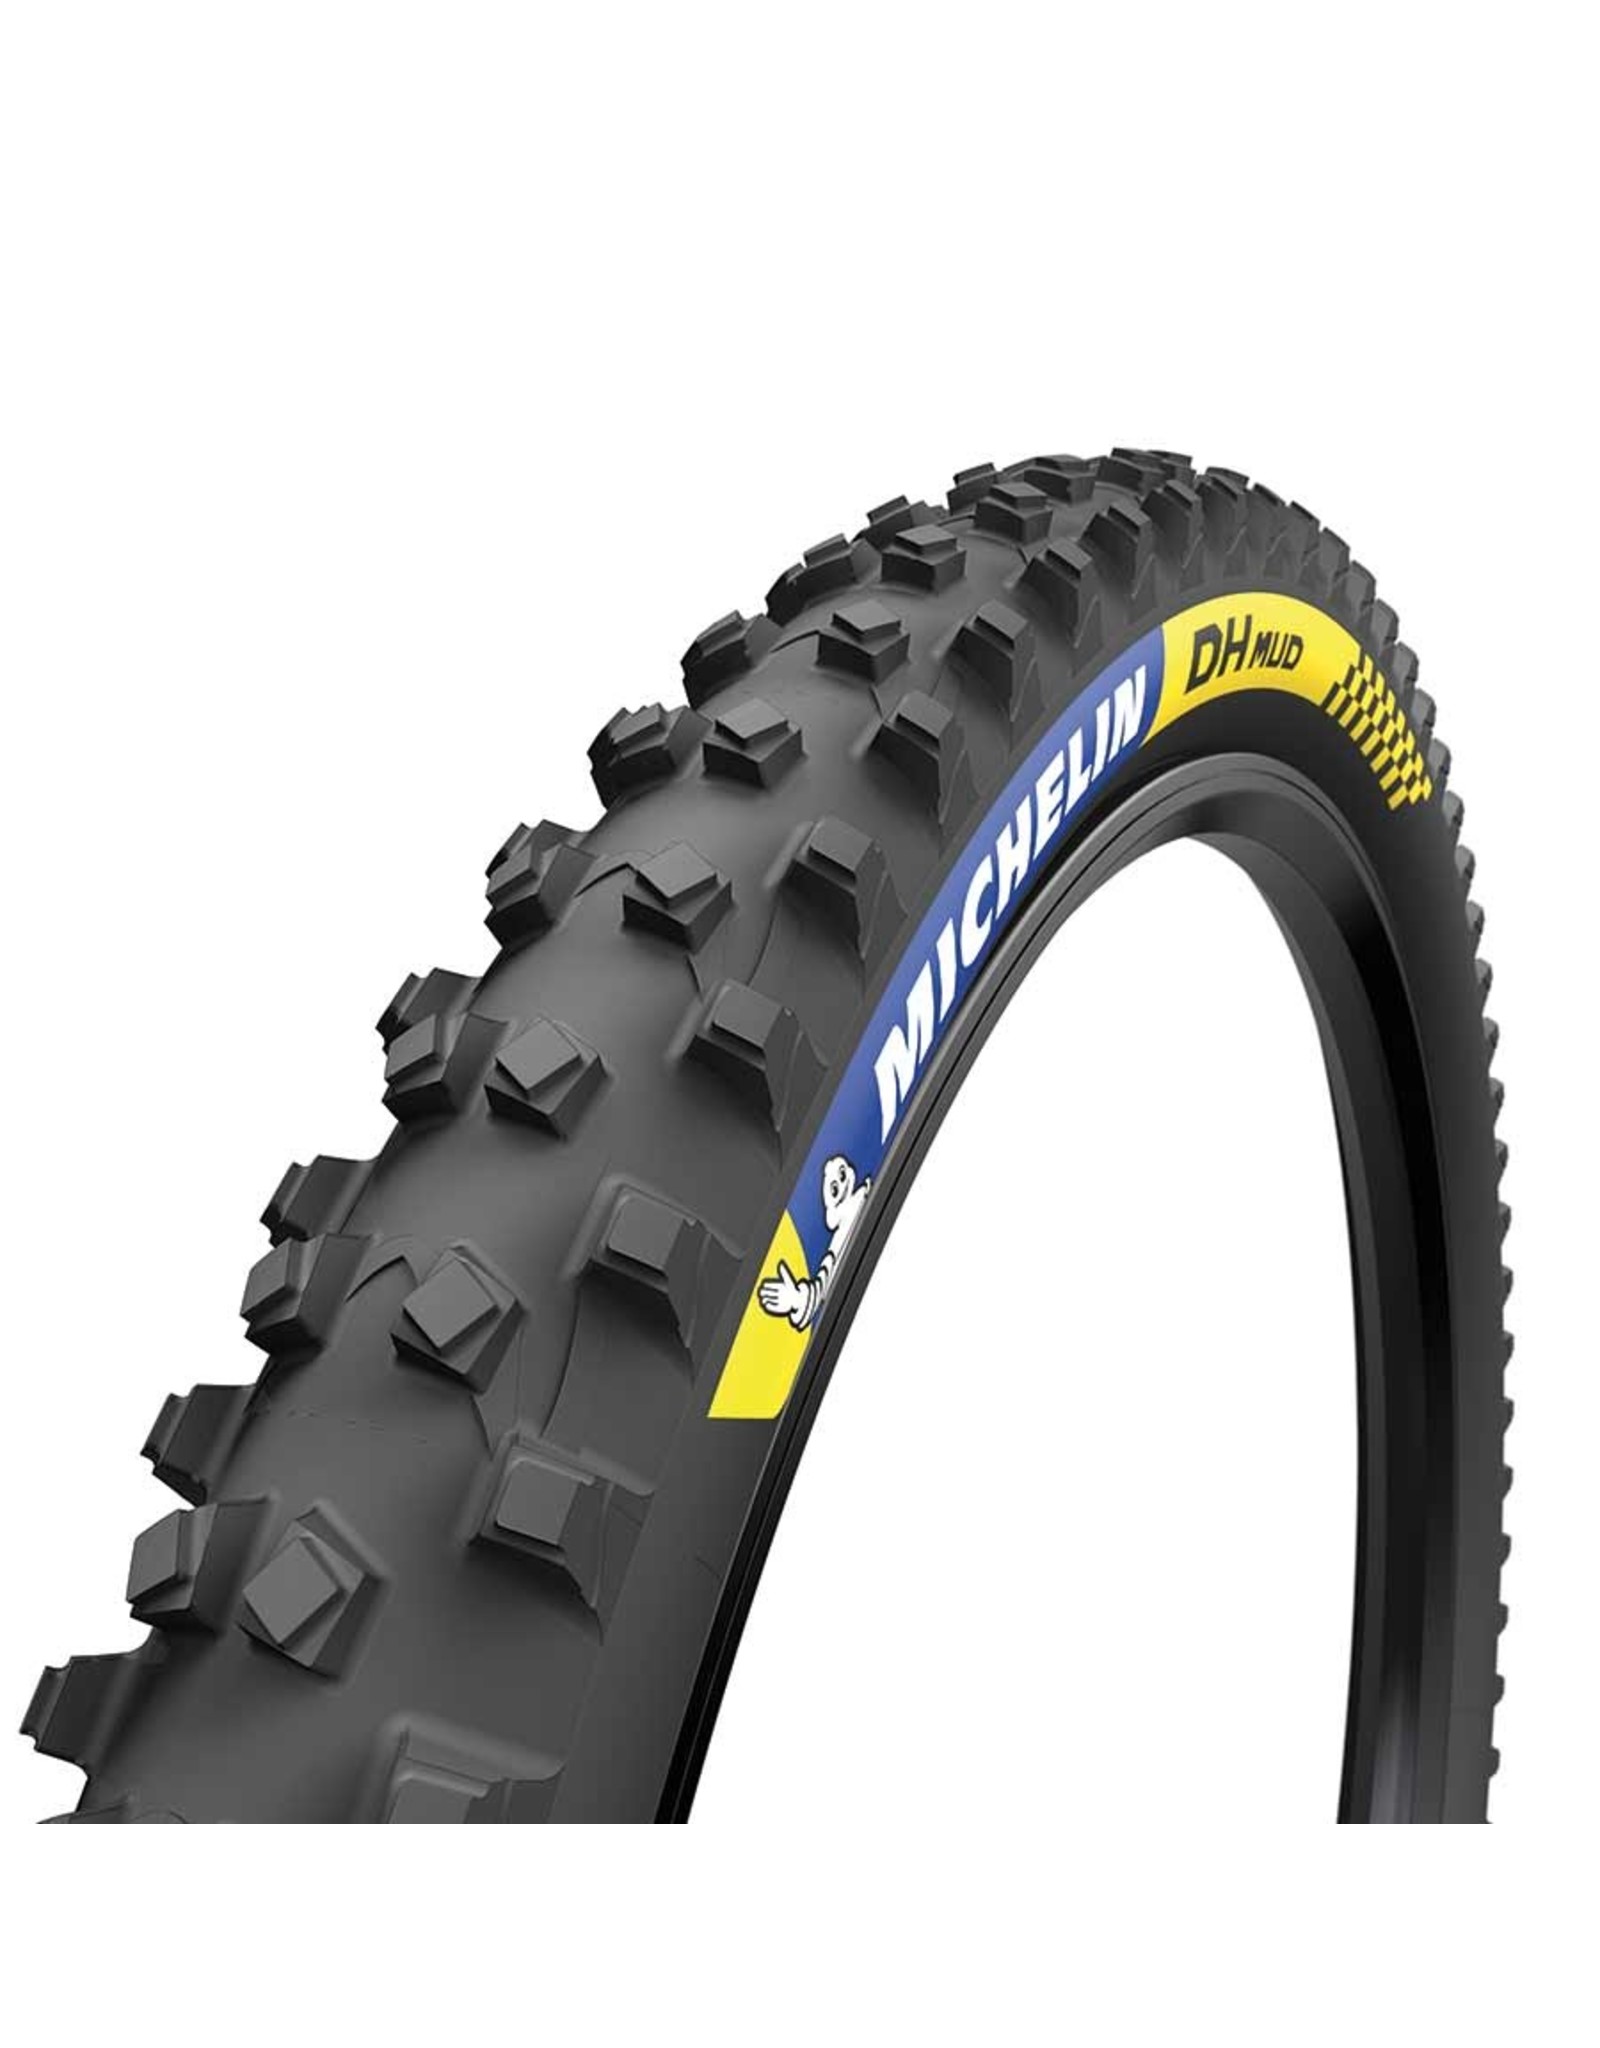 Michelin DH Mud, Tire, 27.5''x2.40